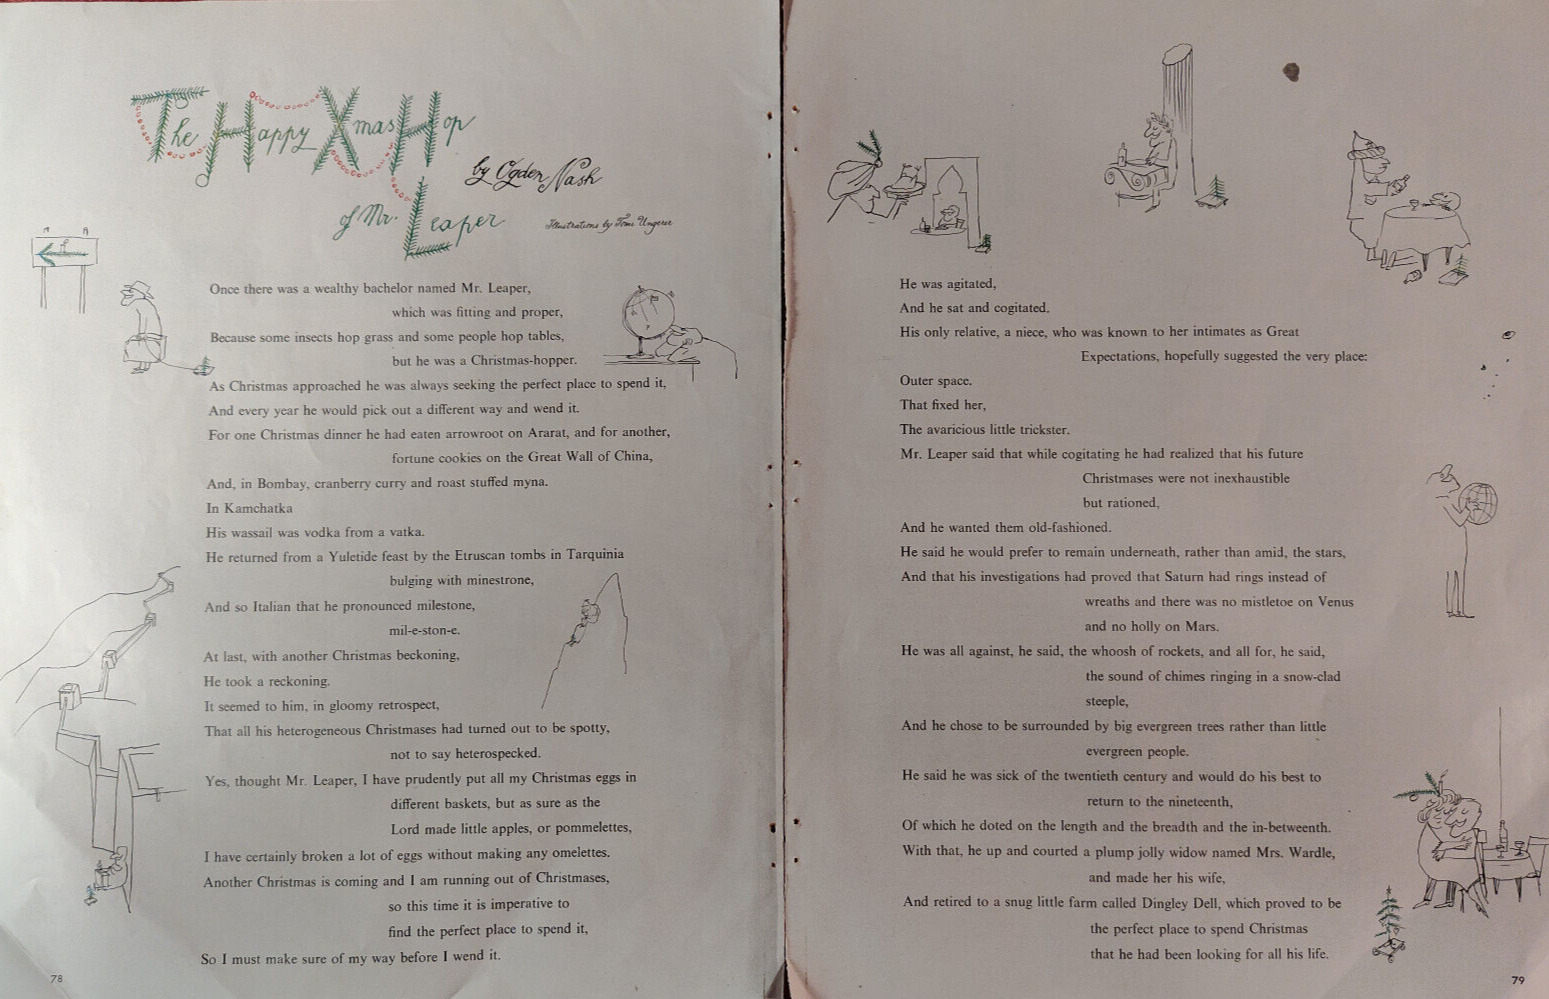 1959 Holiday Original Illustrated Poem OGDEN NASH Happy Xmas Hop of Mr Leaper